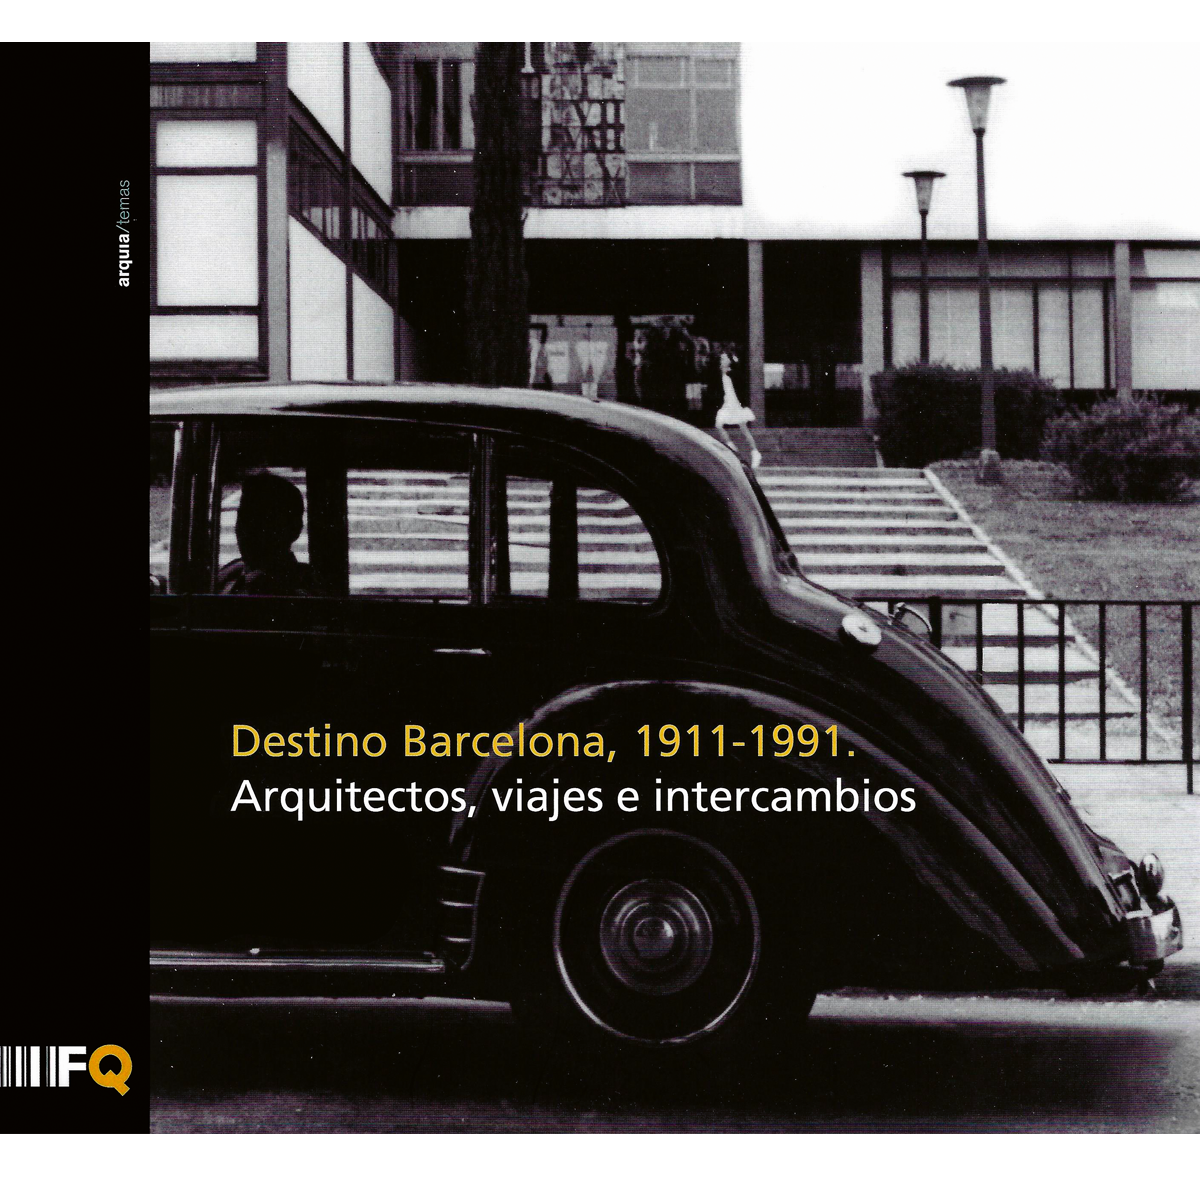 Destino Barcelona, 1911-1991